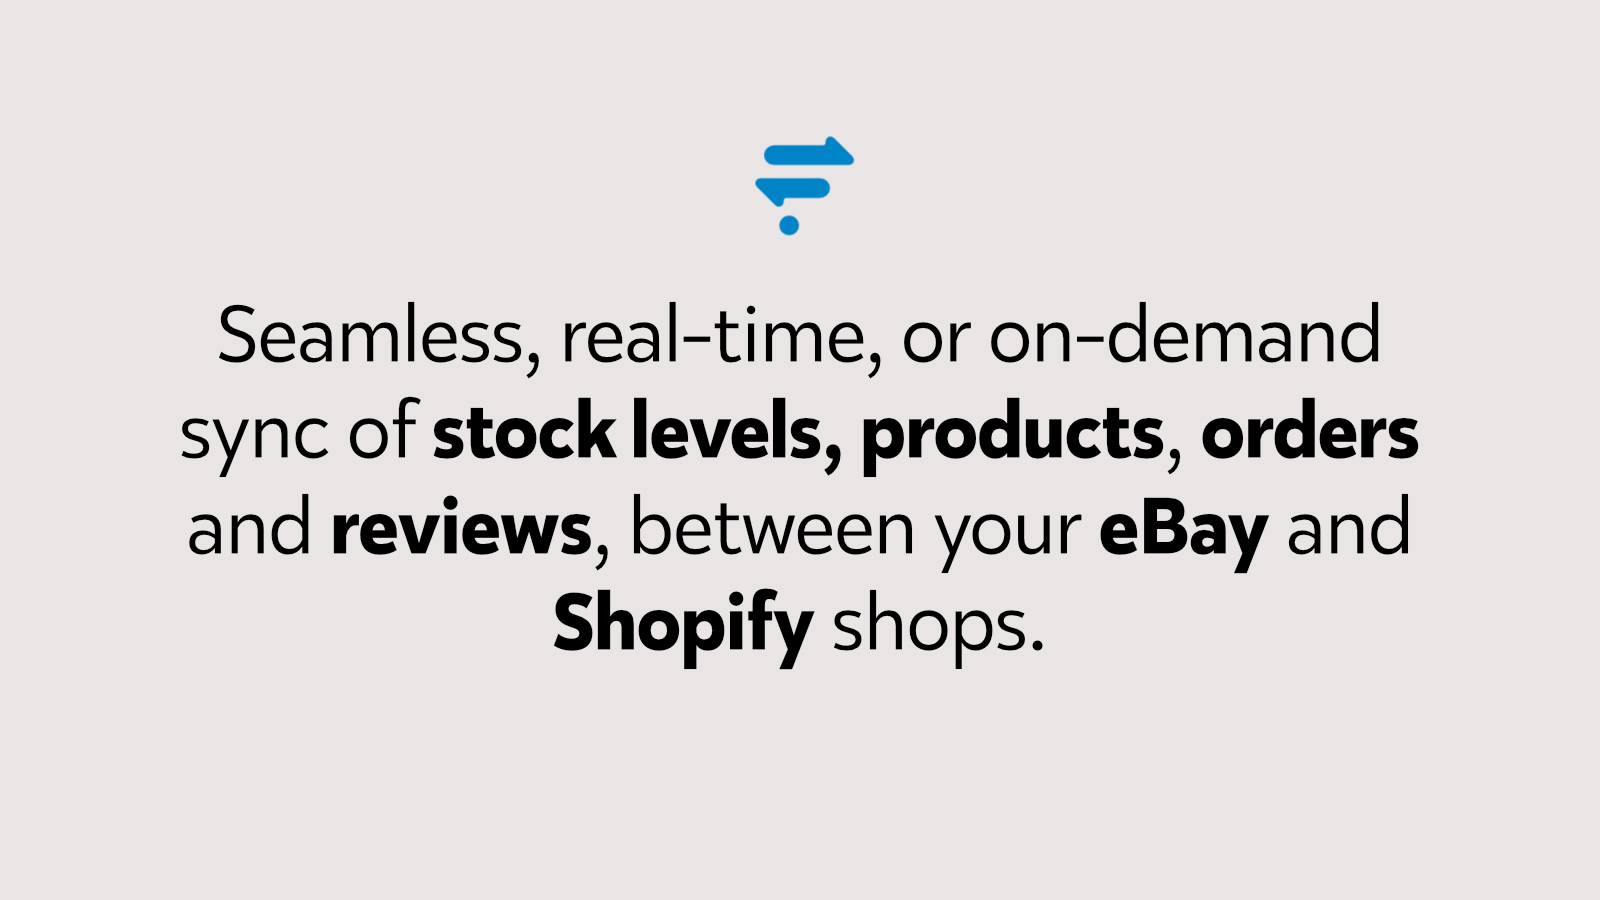 Komplett realtidssynkronisering av butiken mellan eBay och Shopify